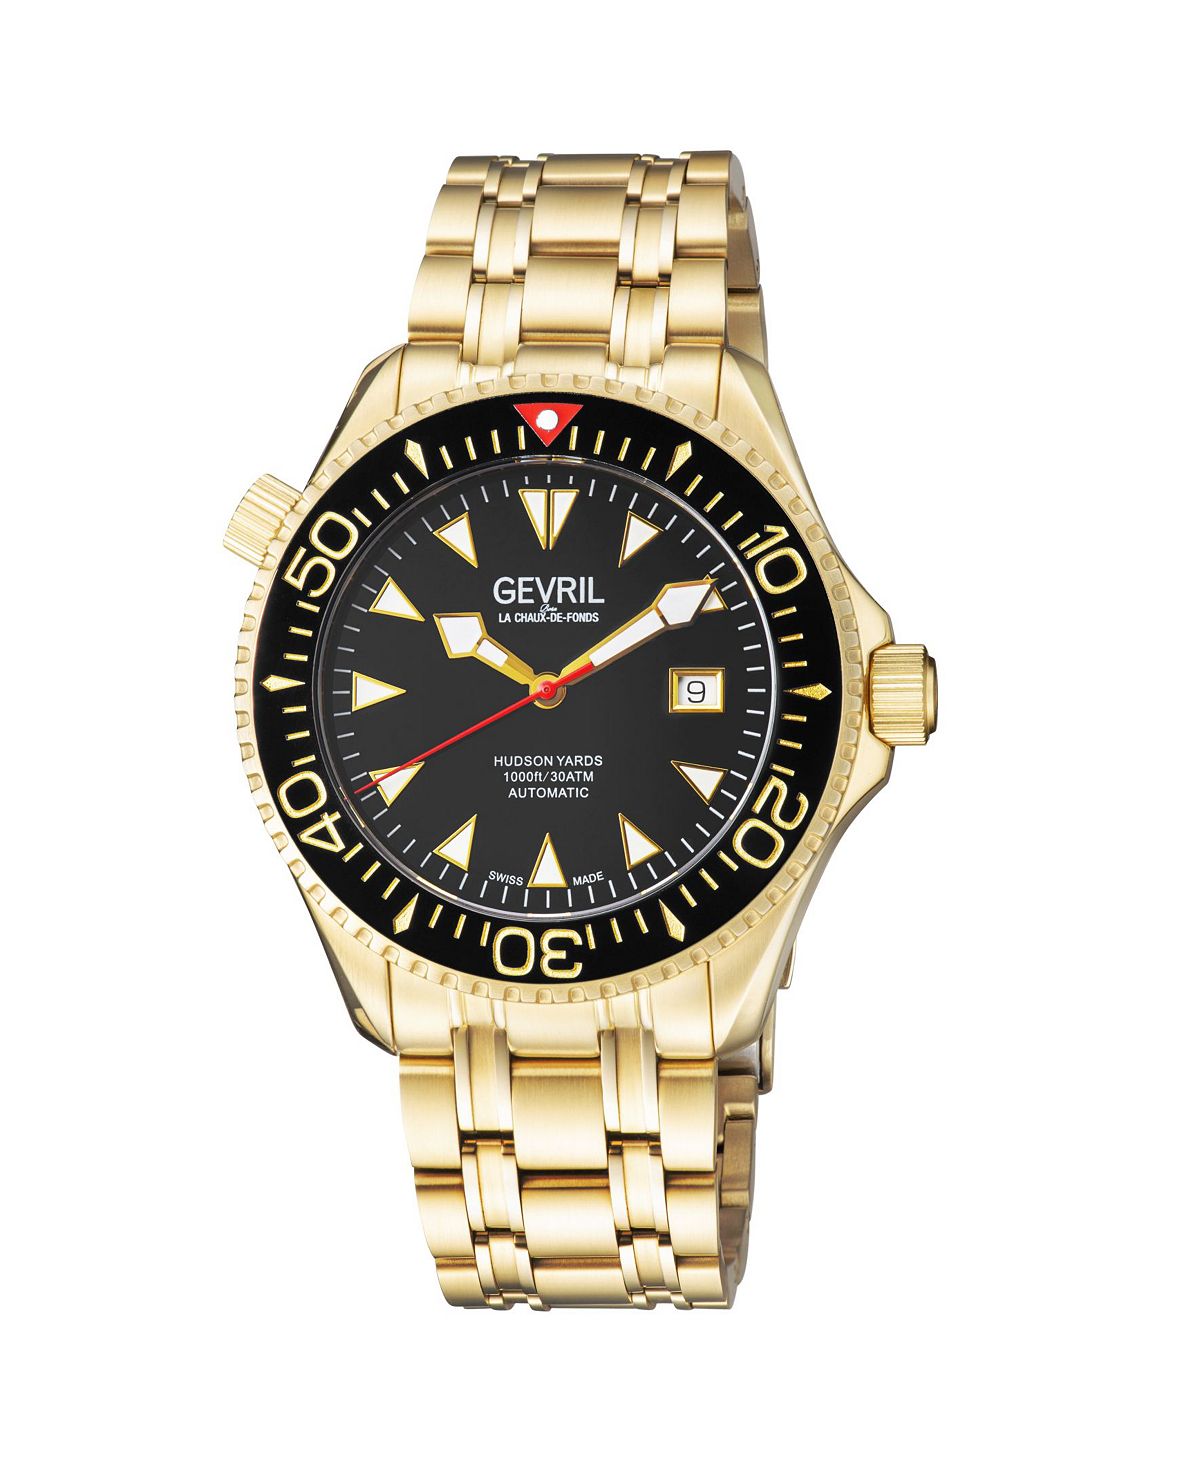 Мужские часы Hudson Yards 48804 Швейцарские автоматические часы-браслет 45 мм Gevril цена и фото